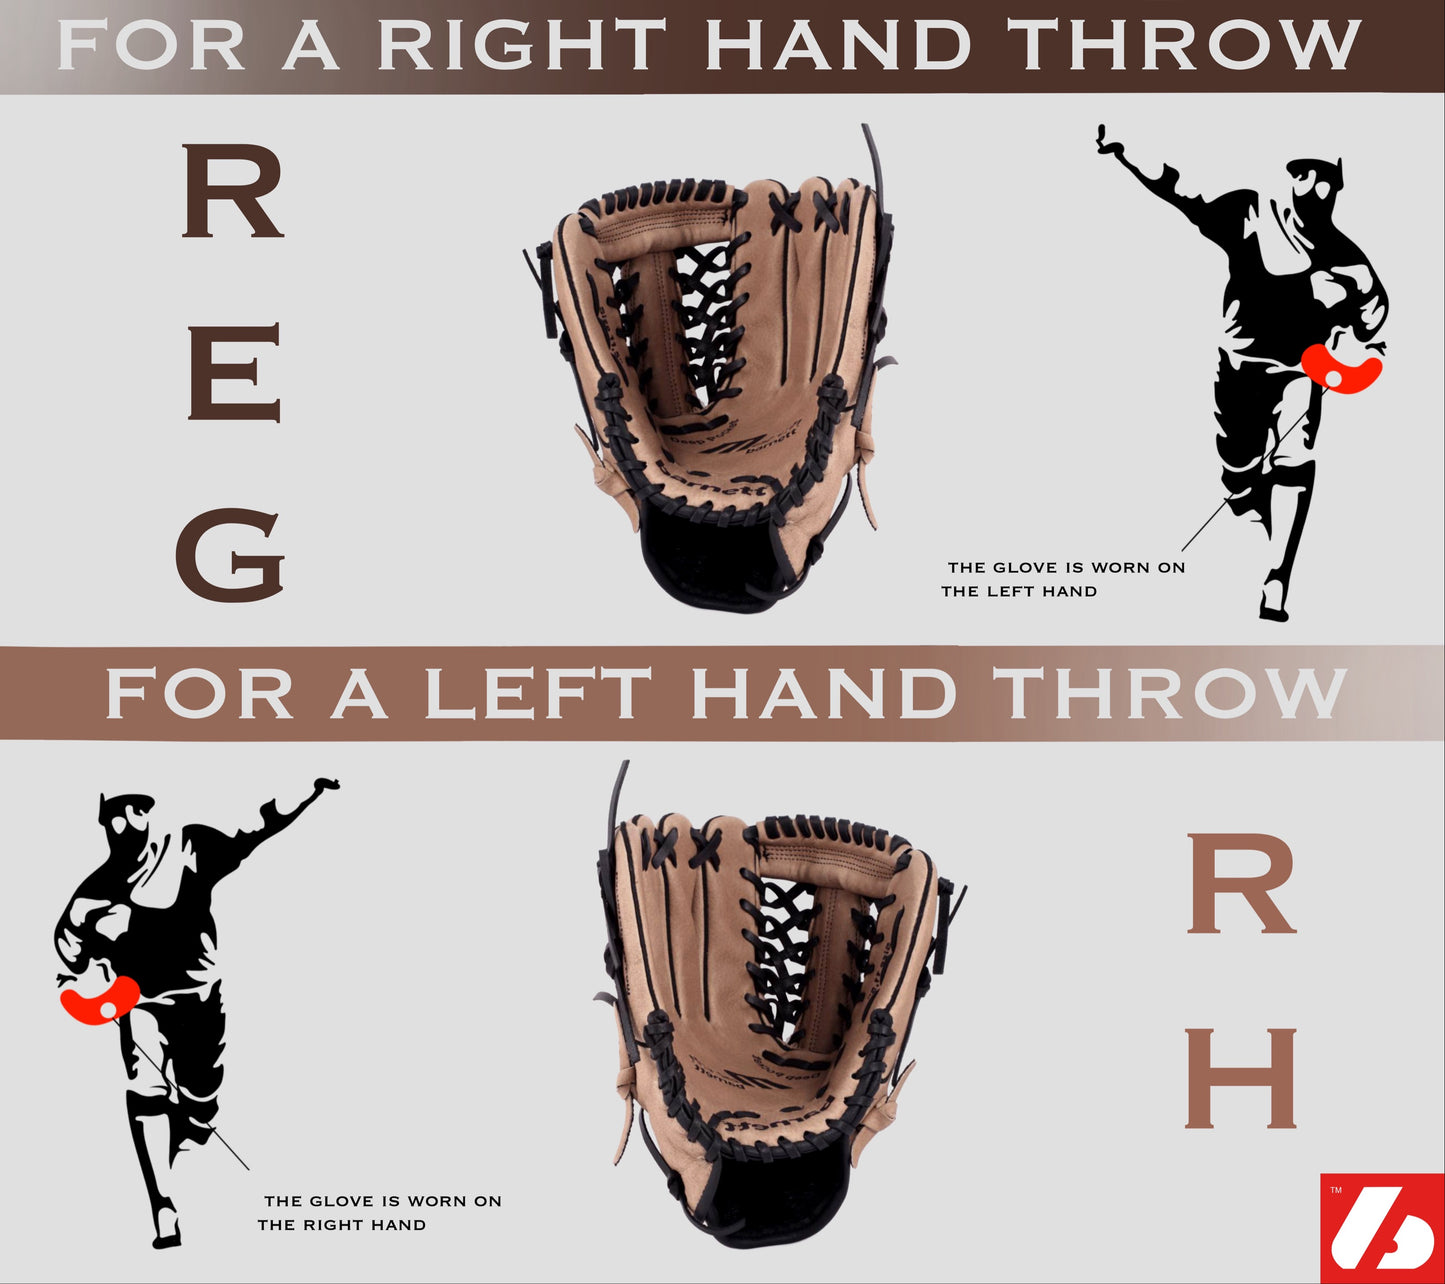 FL-130 Profesionální baseballové rukavice, (celokožené), outfield, softball, 13", béžová